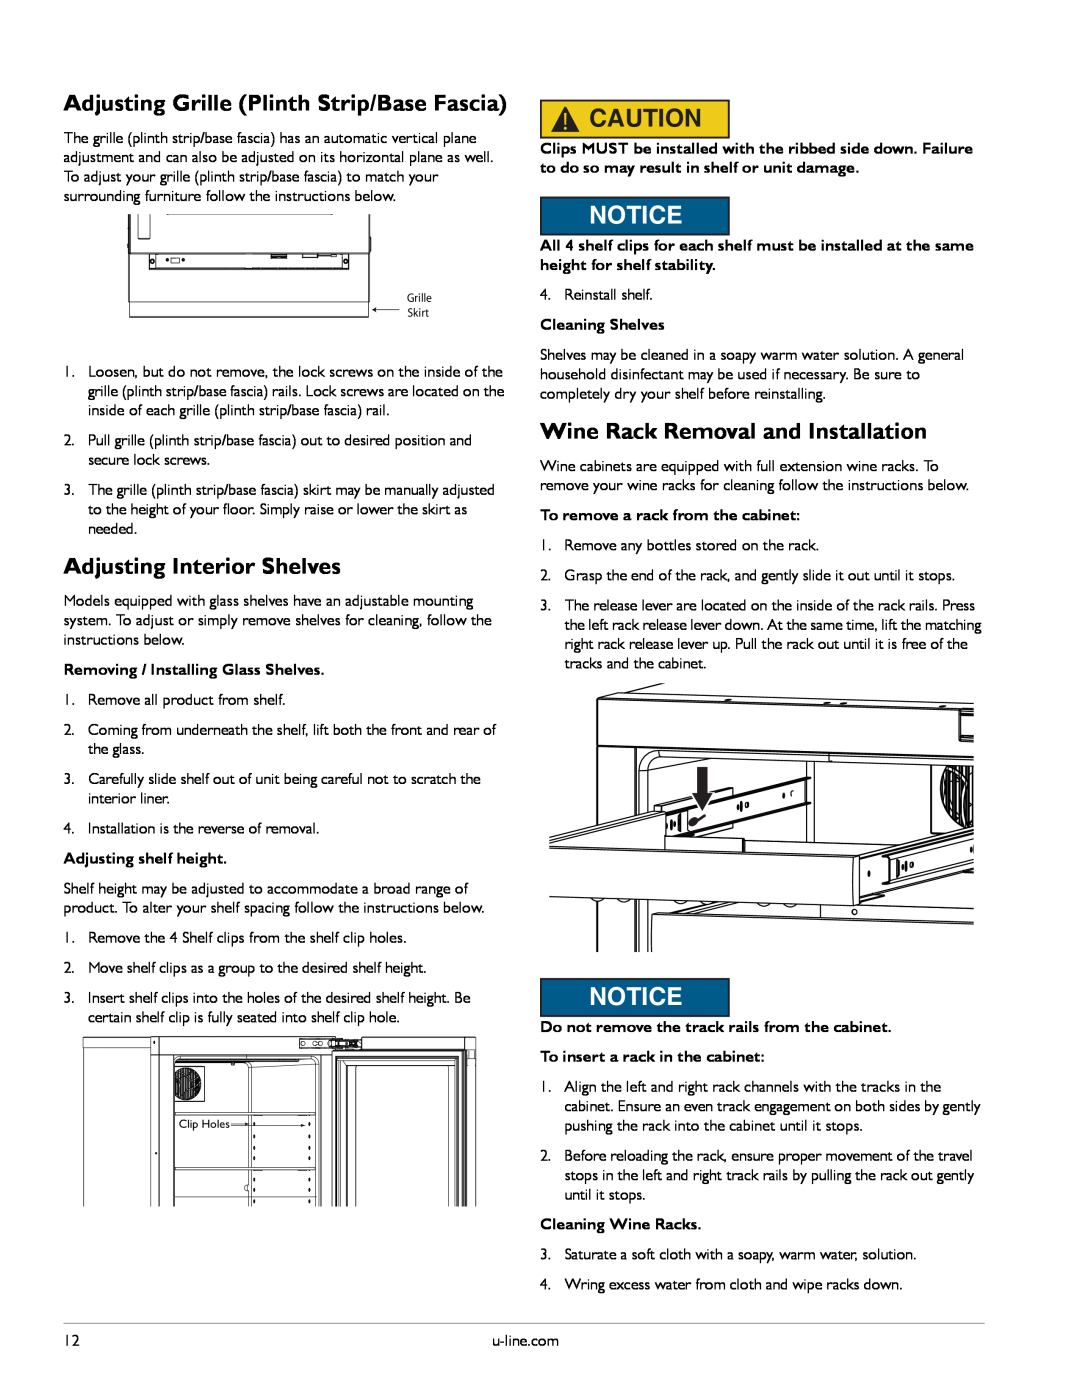 U-Line U-3060RDCS-00 manual Adjusting Grille Plinth Strip/Base Fascia, Adjusting Interior Shelves, Adjusting shelf height 